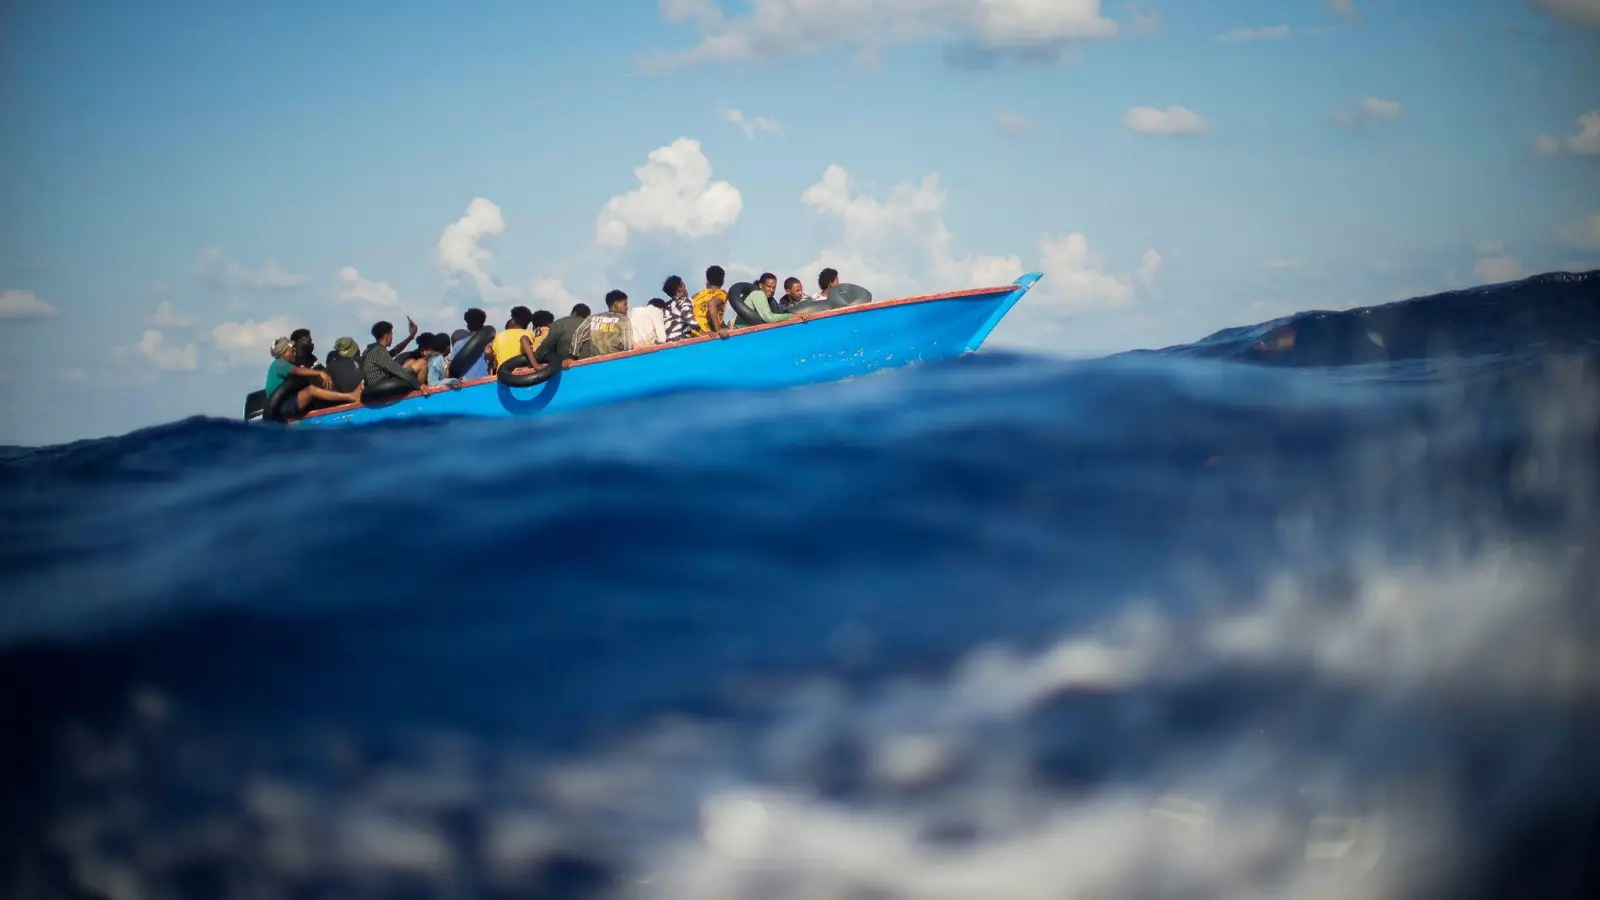 Viele Migranten versuchen die lebensgefährliche Überfahrt in oft seeuntauglichen Booten. (Foto: Francisco Seco/AP/dpa/Archiv)